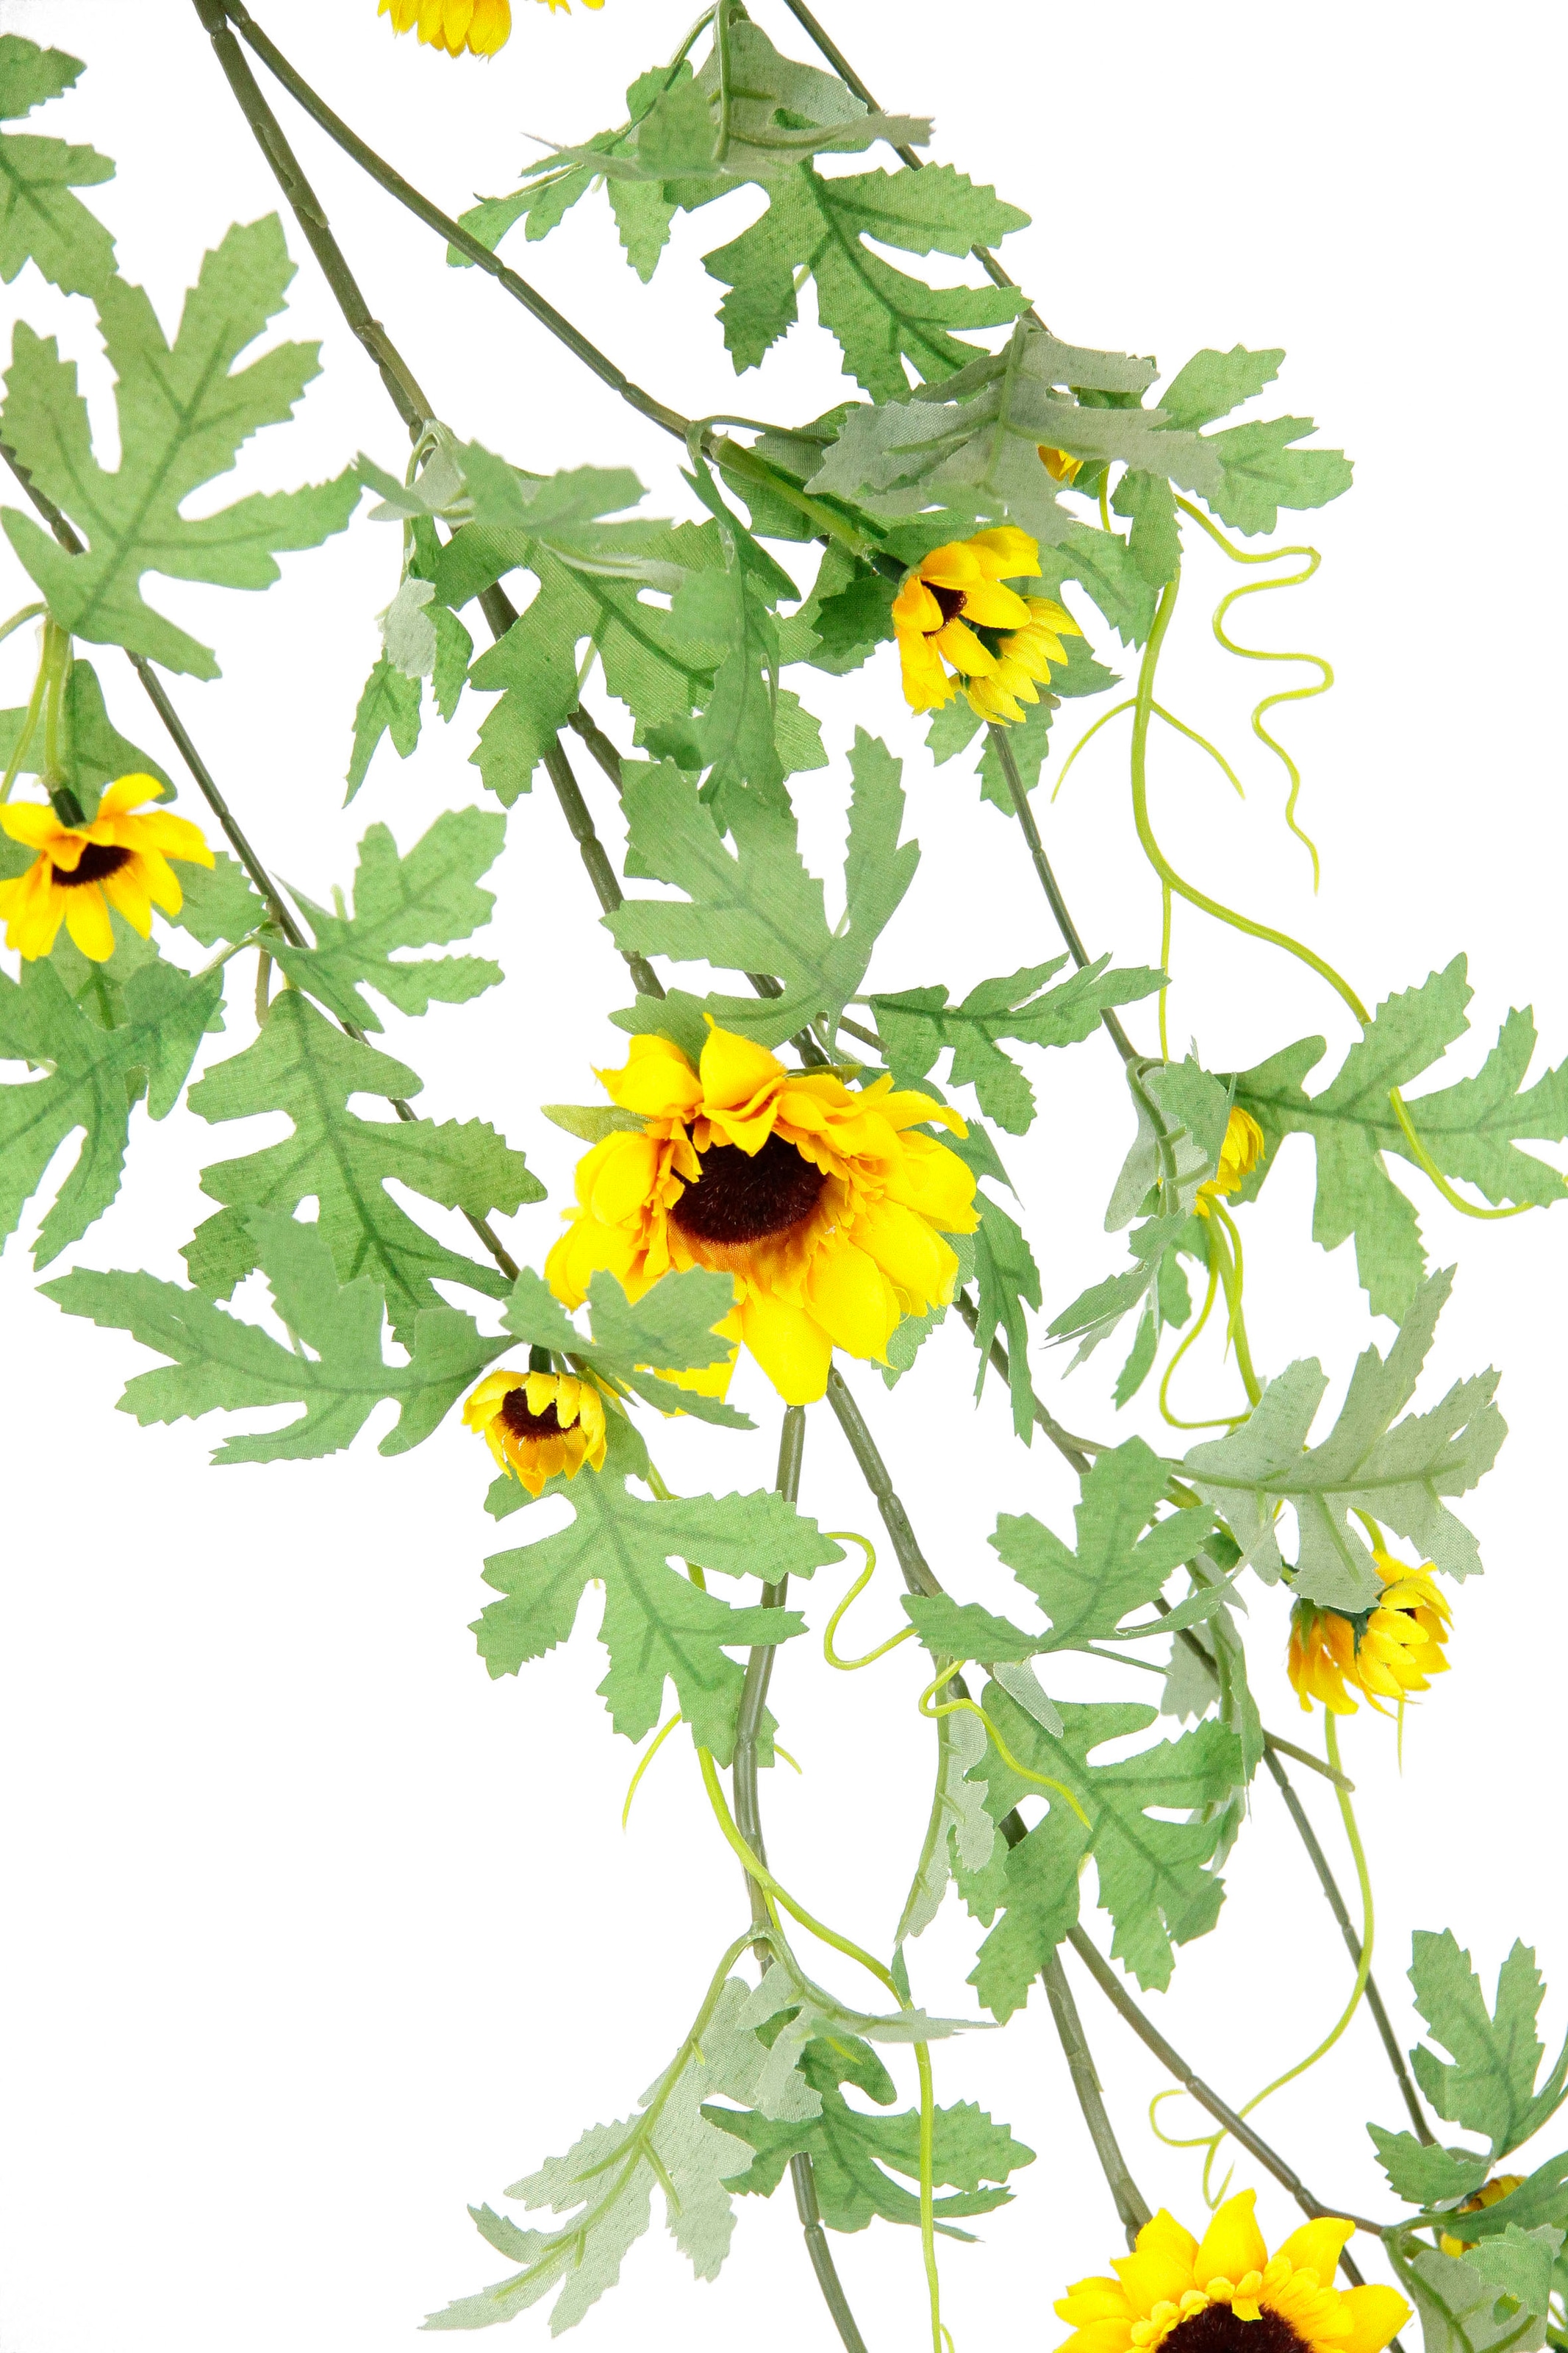 I.GE.A. Kunstblume »Sonnenblumenranke«, Künstlich Sonnenblumen Girlande Reben Hochzeit Landhaus Blumenkette